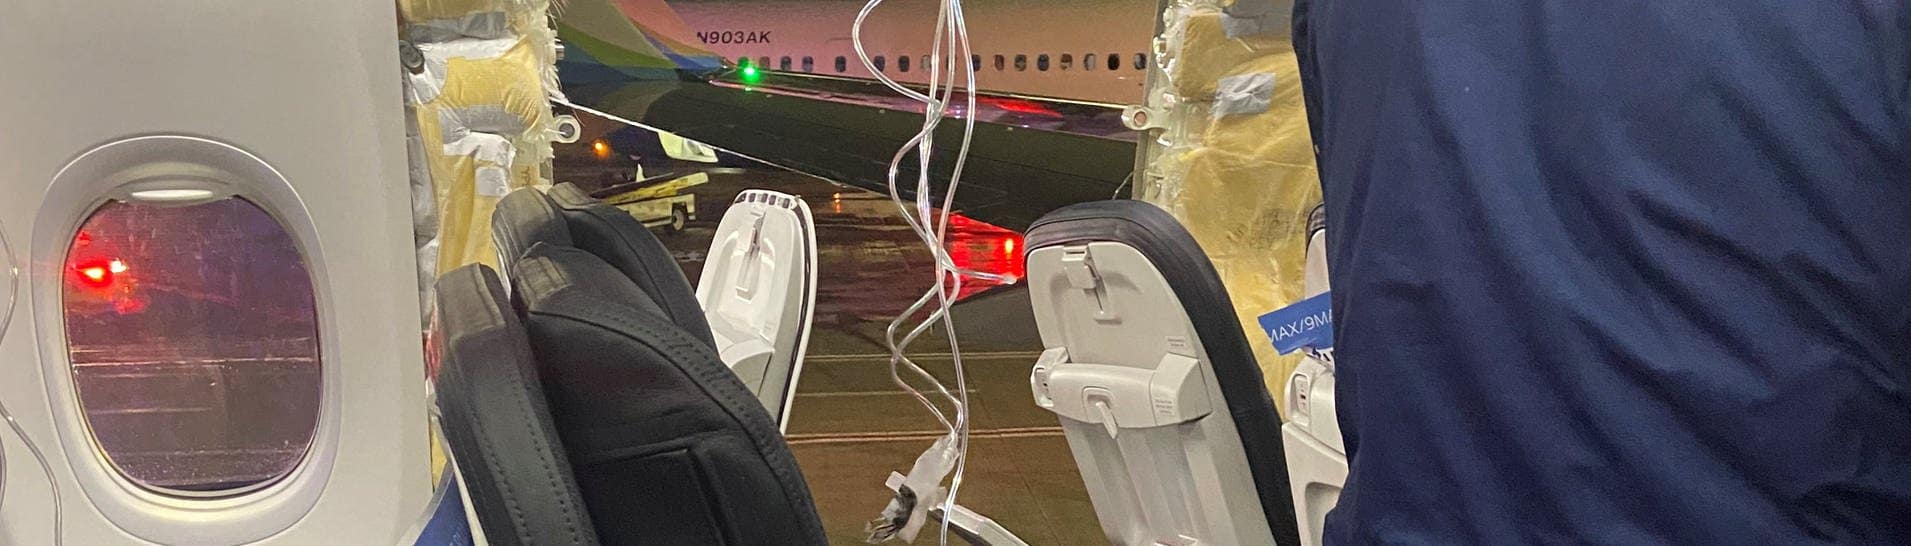 Sauerstoffmasken hängen vor dem Loch in der Wand eines Flugzeugs der Alaska Airlines